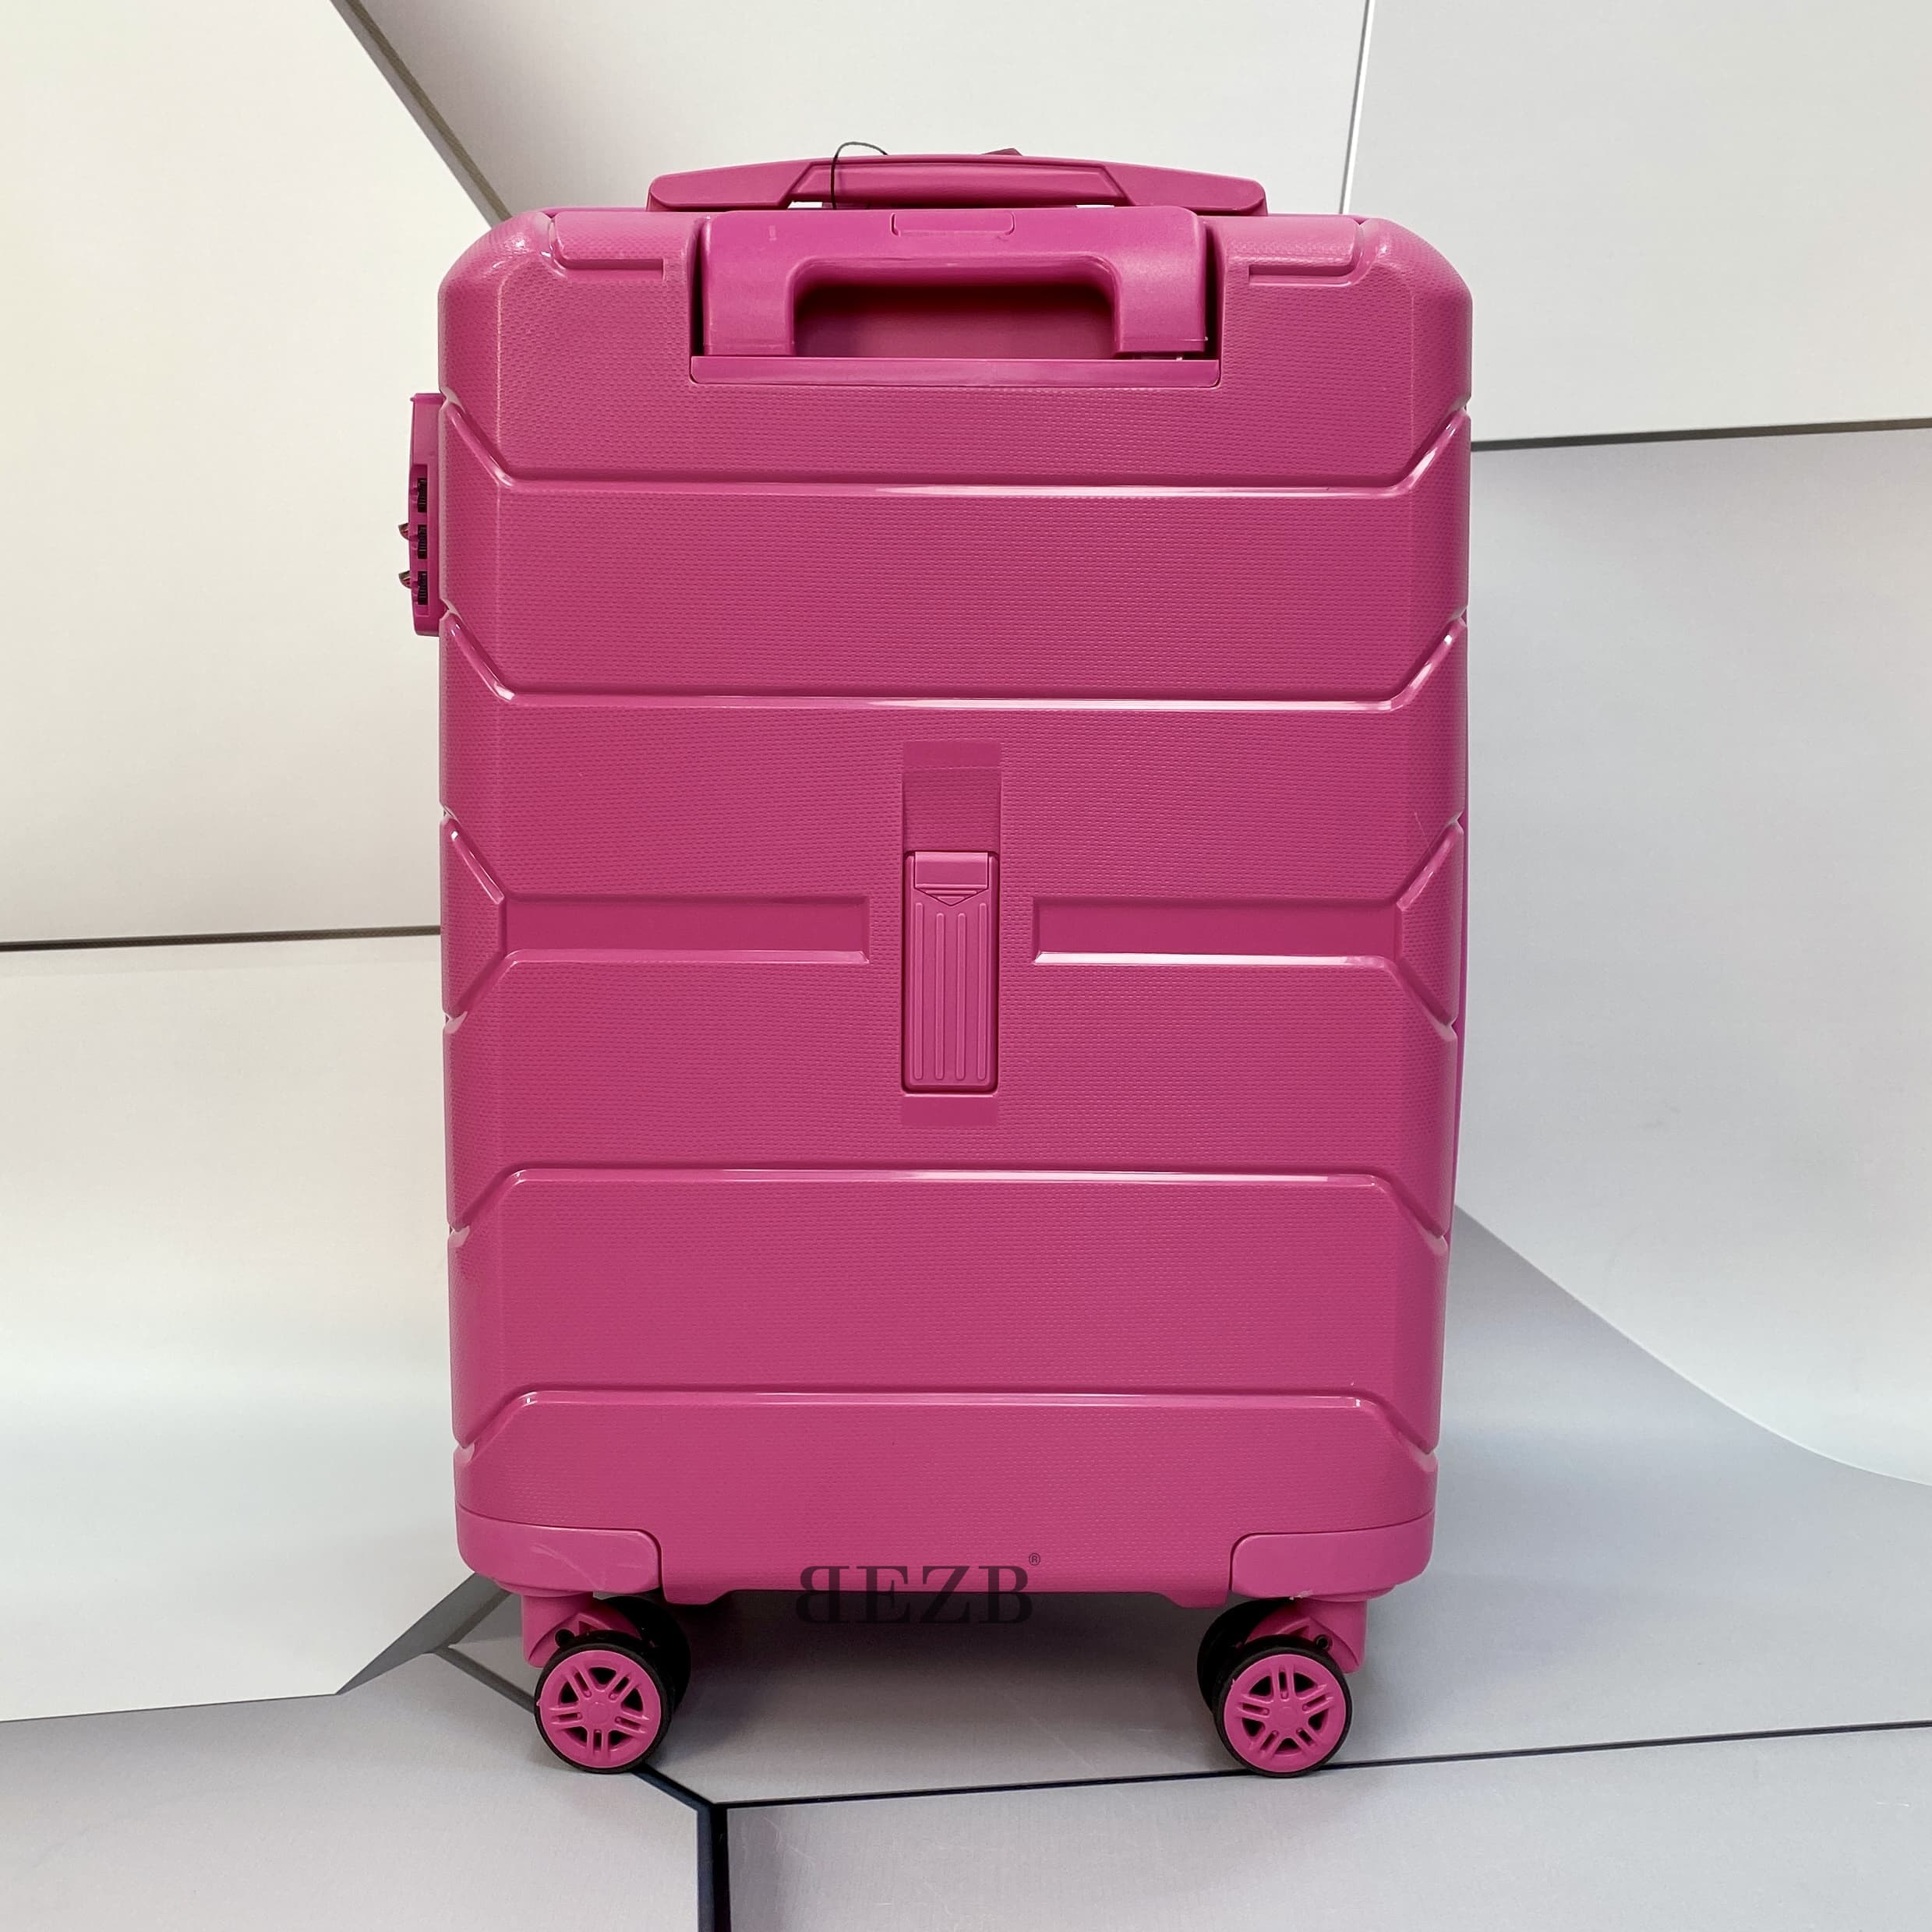 Маленький чемодан для ручьной клади из полипропилена MCS V366 S FUNCSIA! Для 8-10 кг! - 5